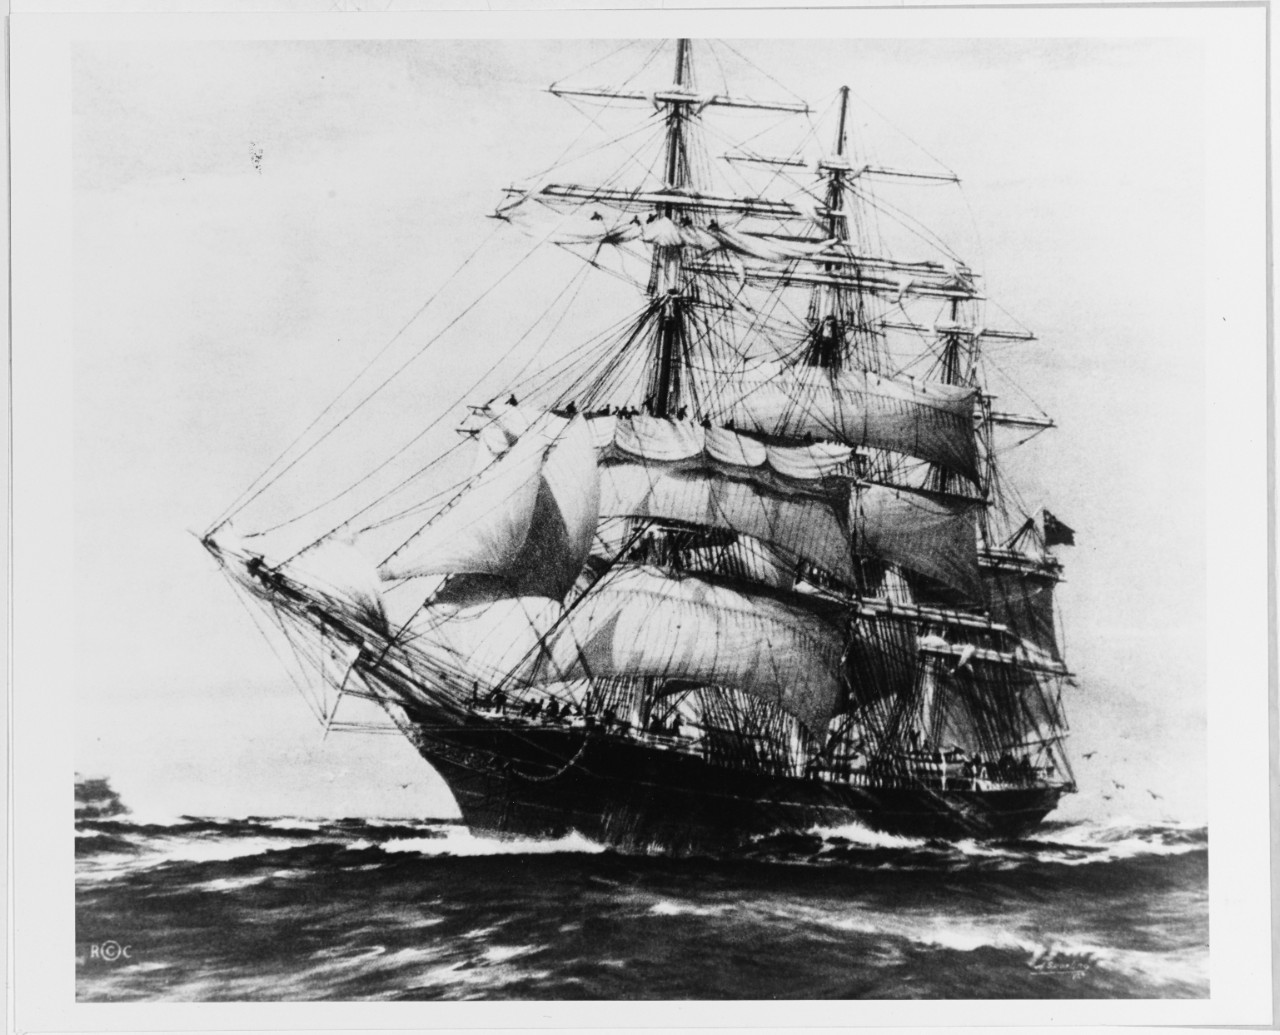 ARISTIDES (British merchantman, built in 1876)